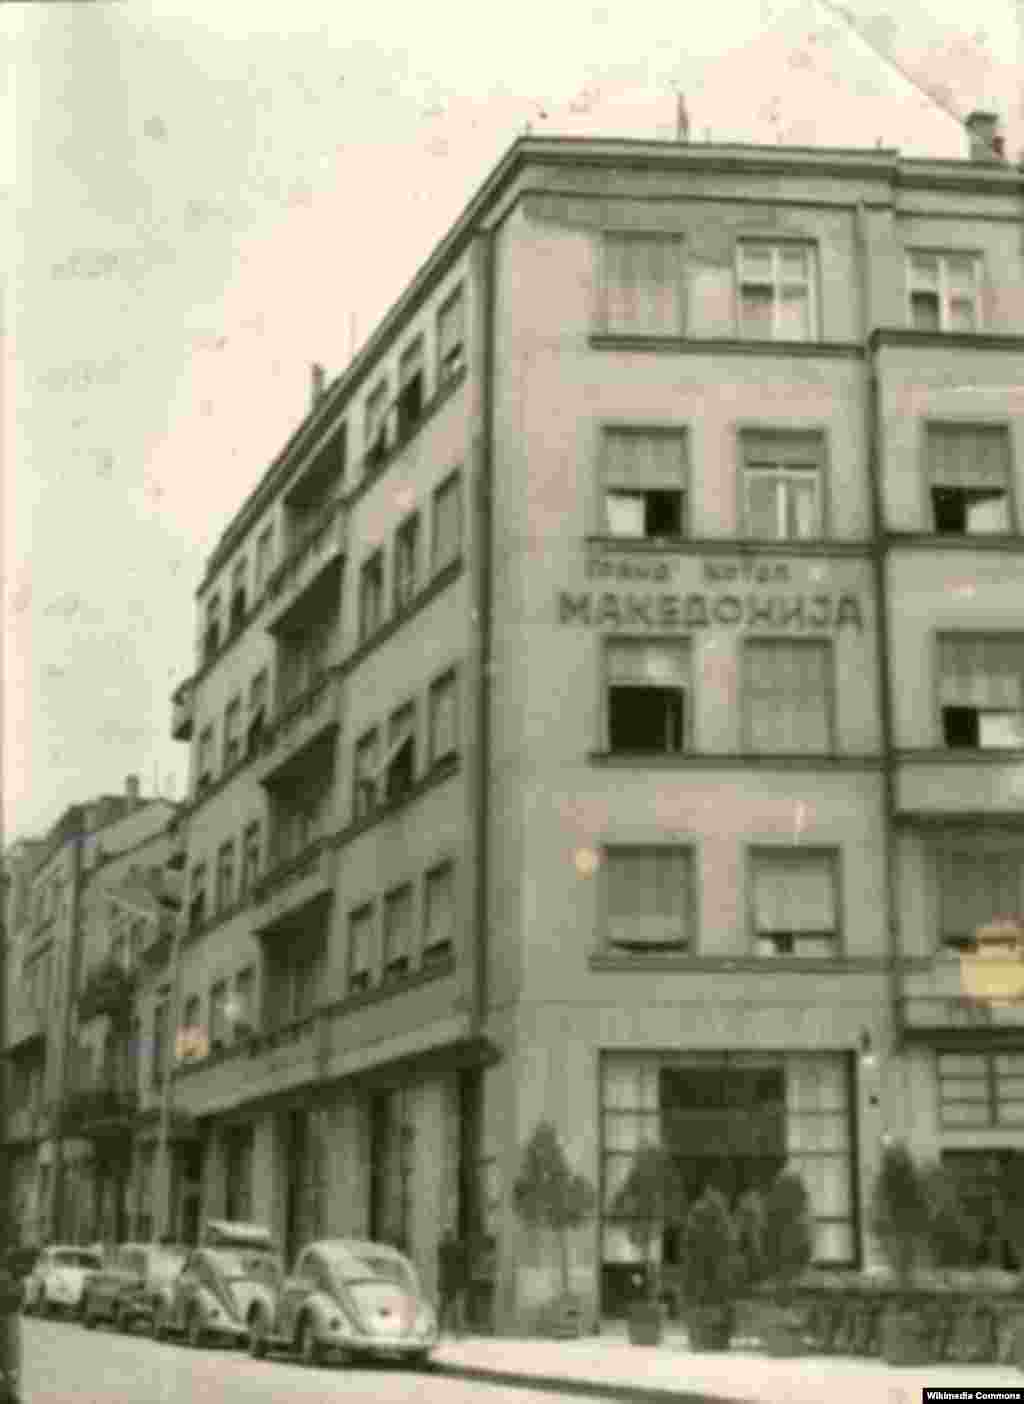 Многу жртви имаше при уривањето на &bdquo;Гранд хотел Македонија&ldquo;, еден од најлуксузните хотели во градот во тоа време.